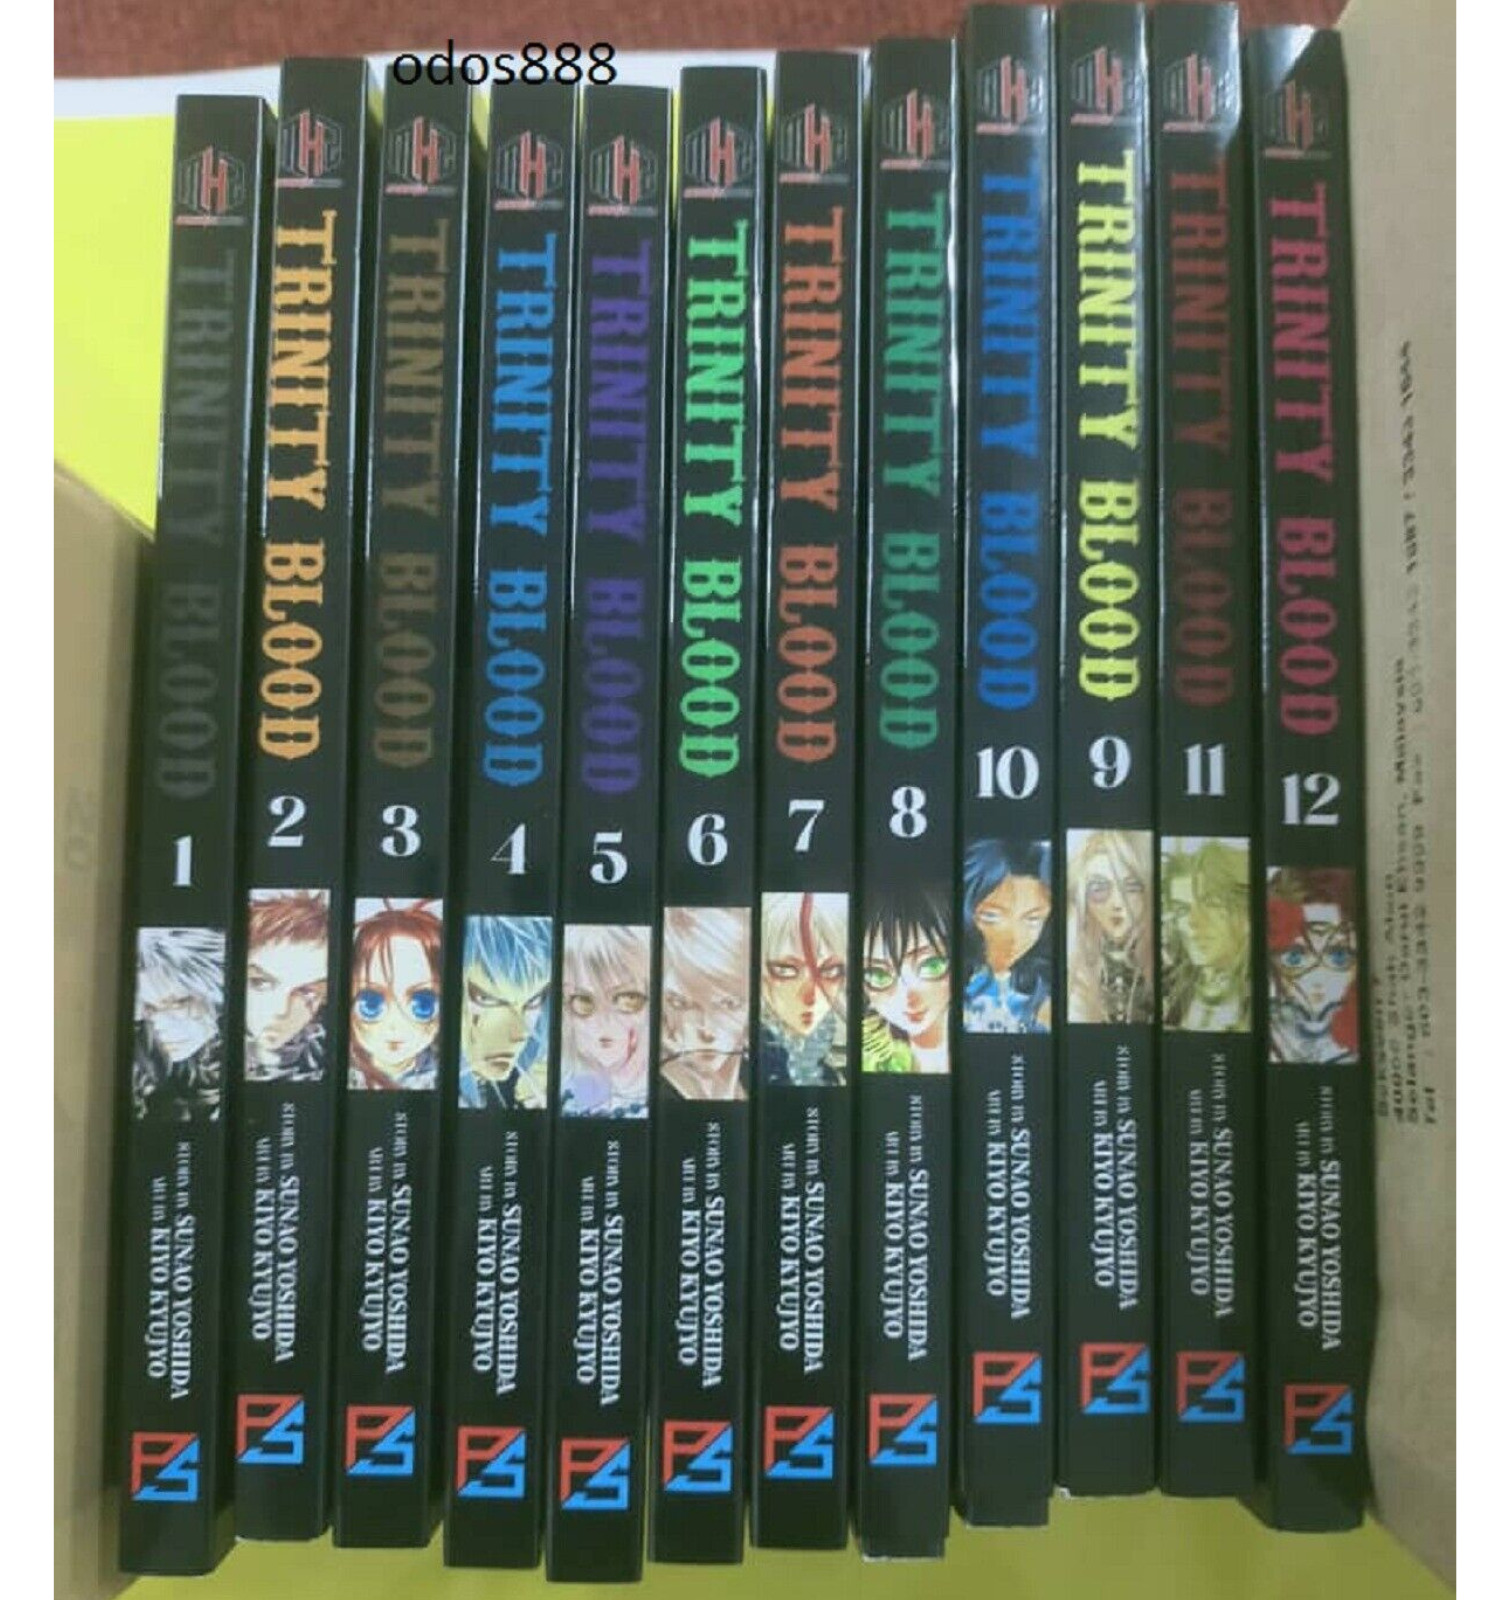 Trinity Blood Manga Volume 1-12 Loose OR Fullset English Version Comic